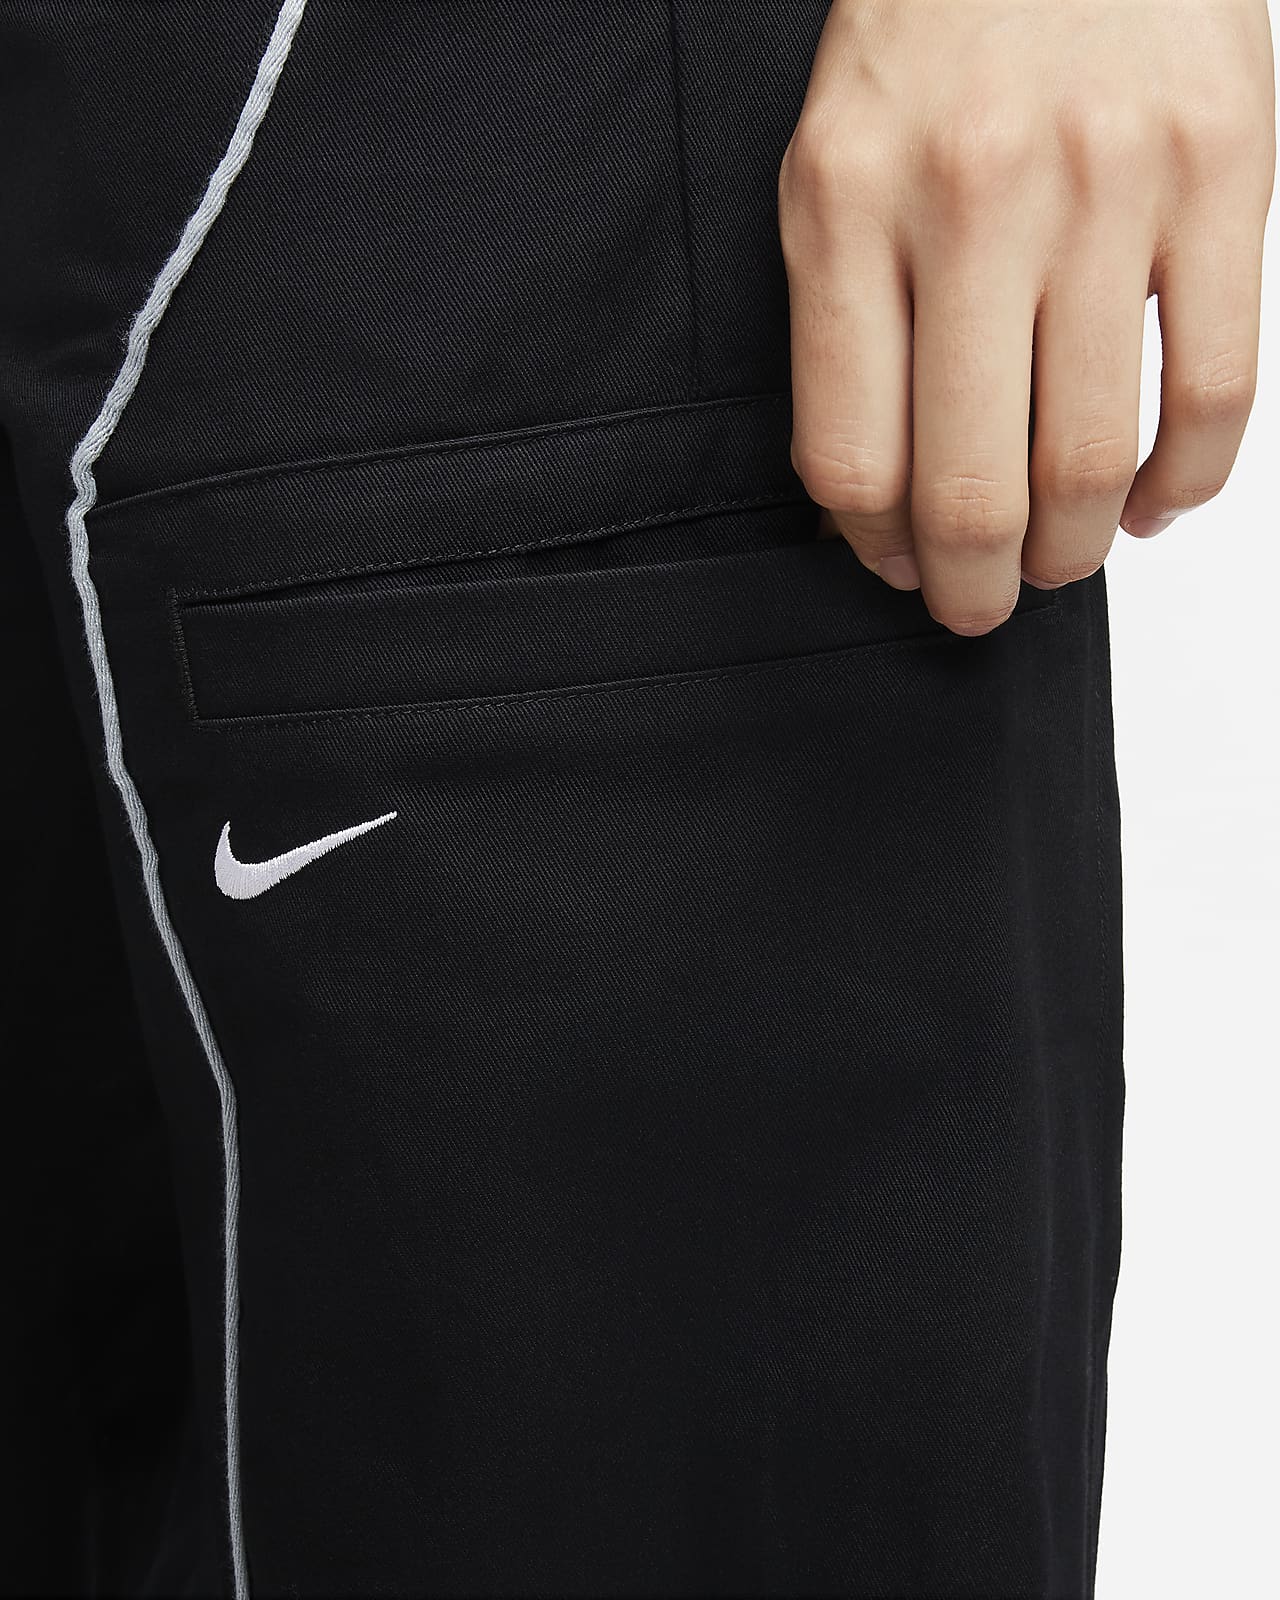 Pants de tejido Woven de tiro alto para mujer Nike Sportswear